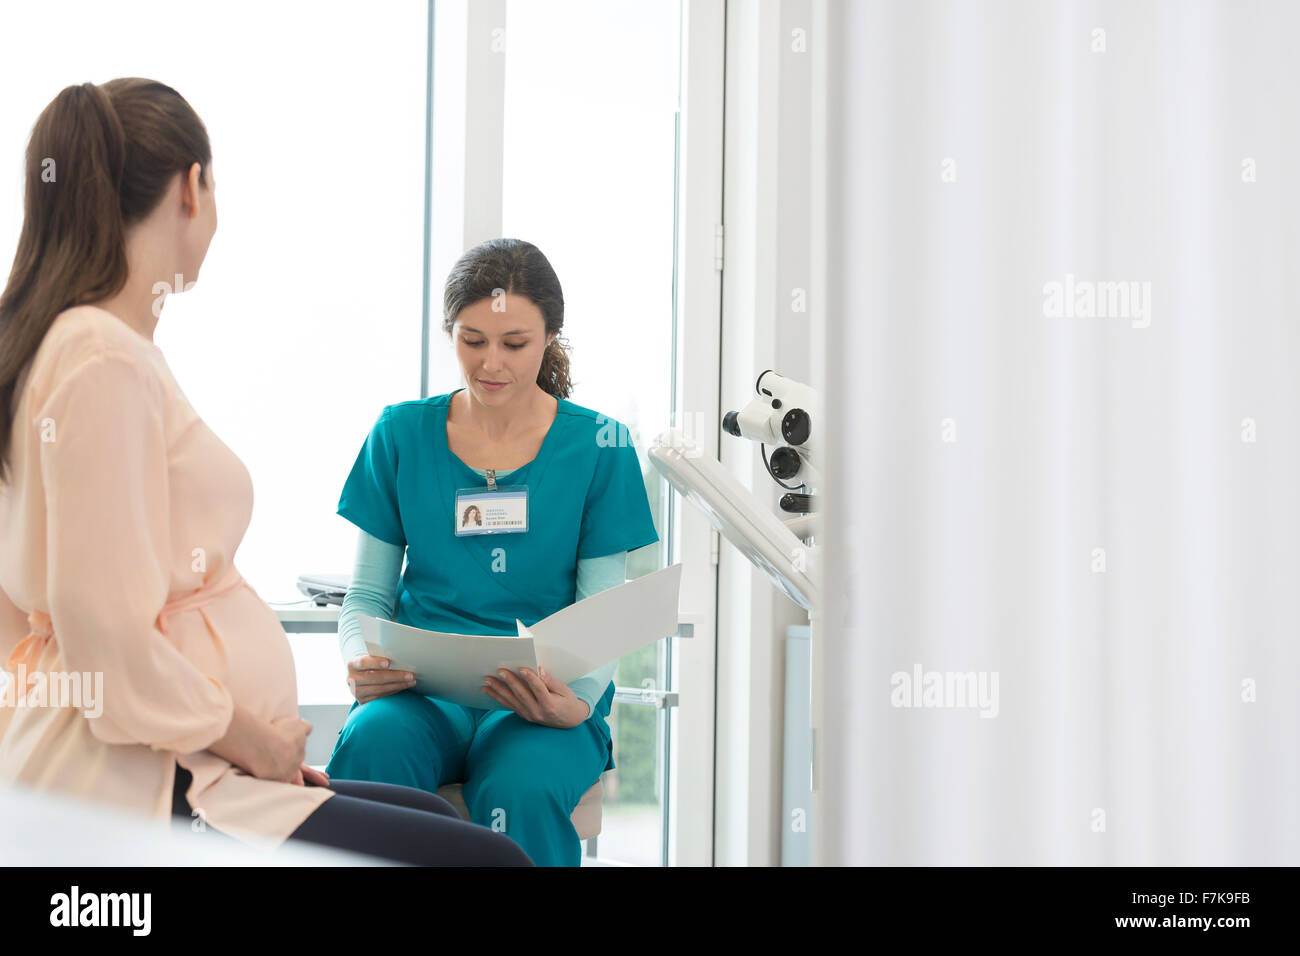 Infirmière et patiente enceinte l'examen medical chart in examination room Banque D'Images